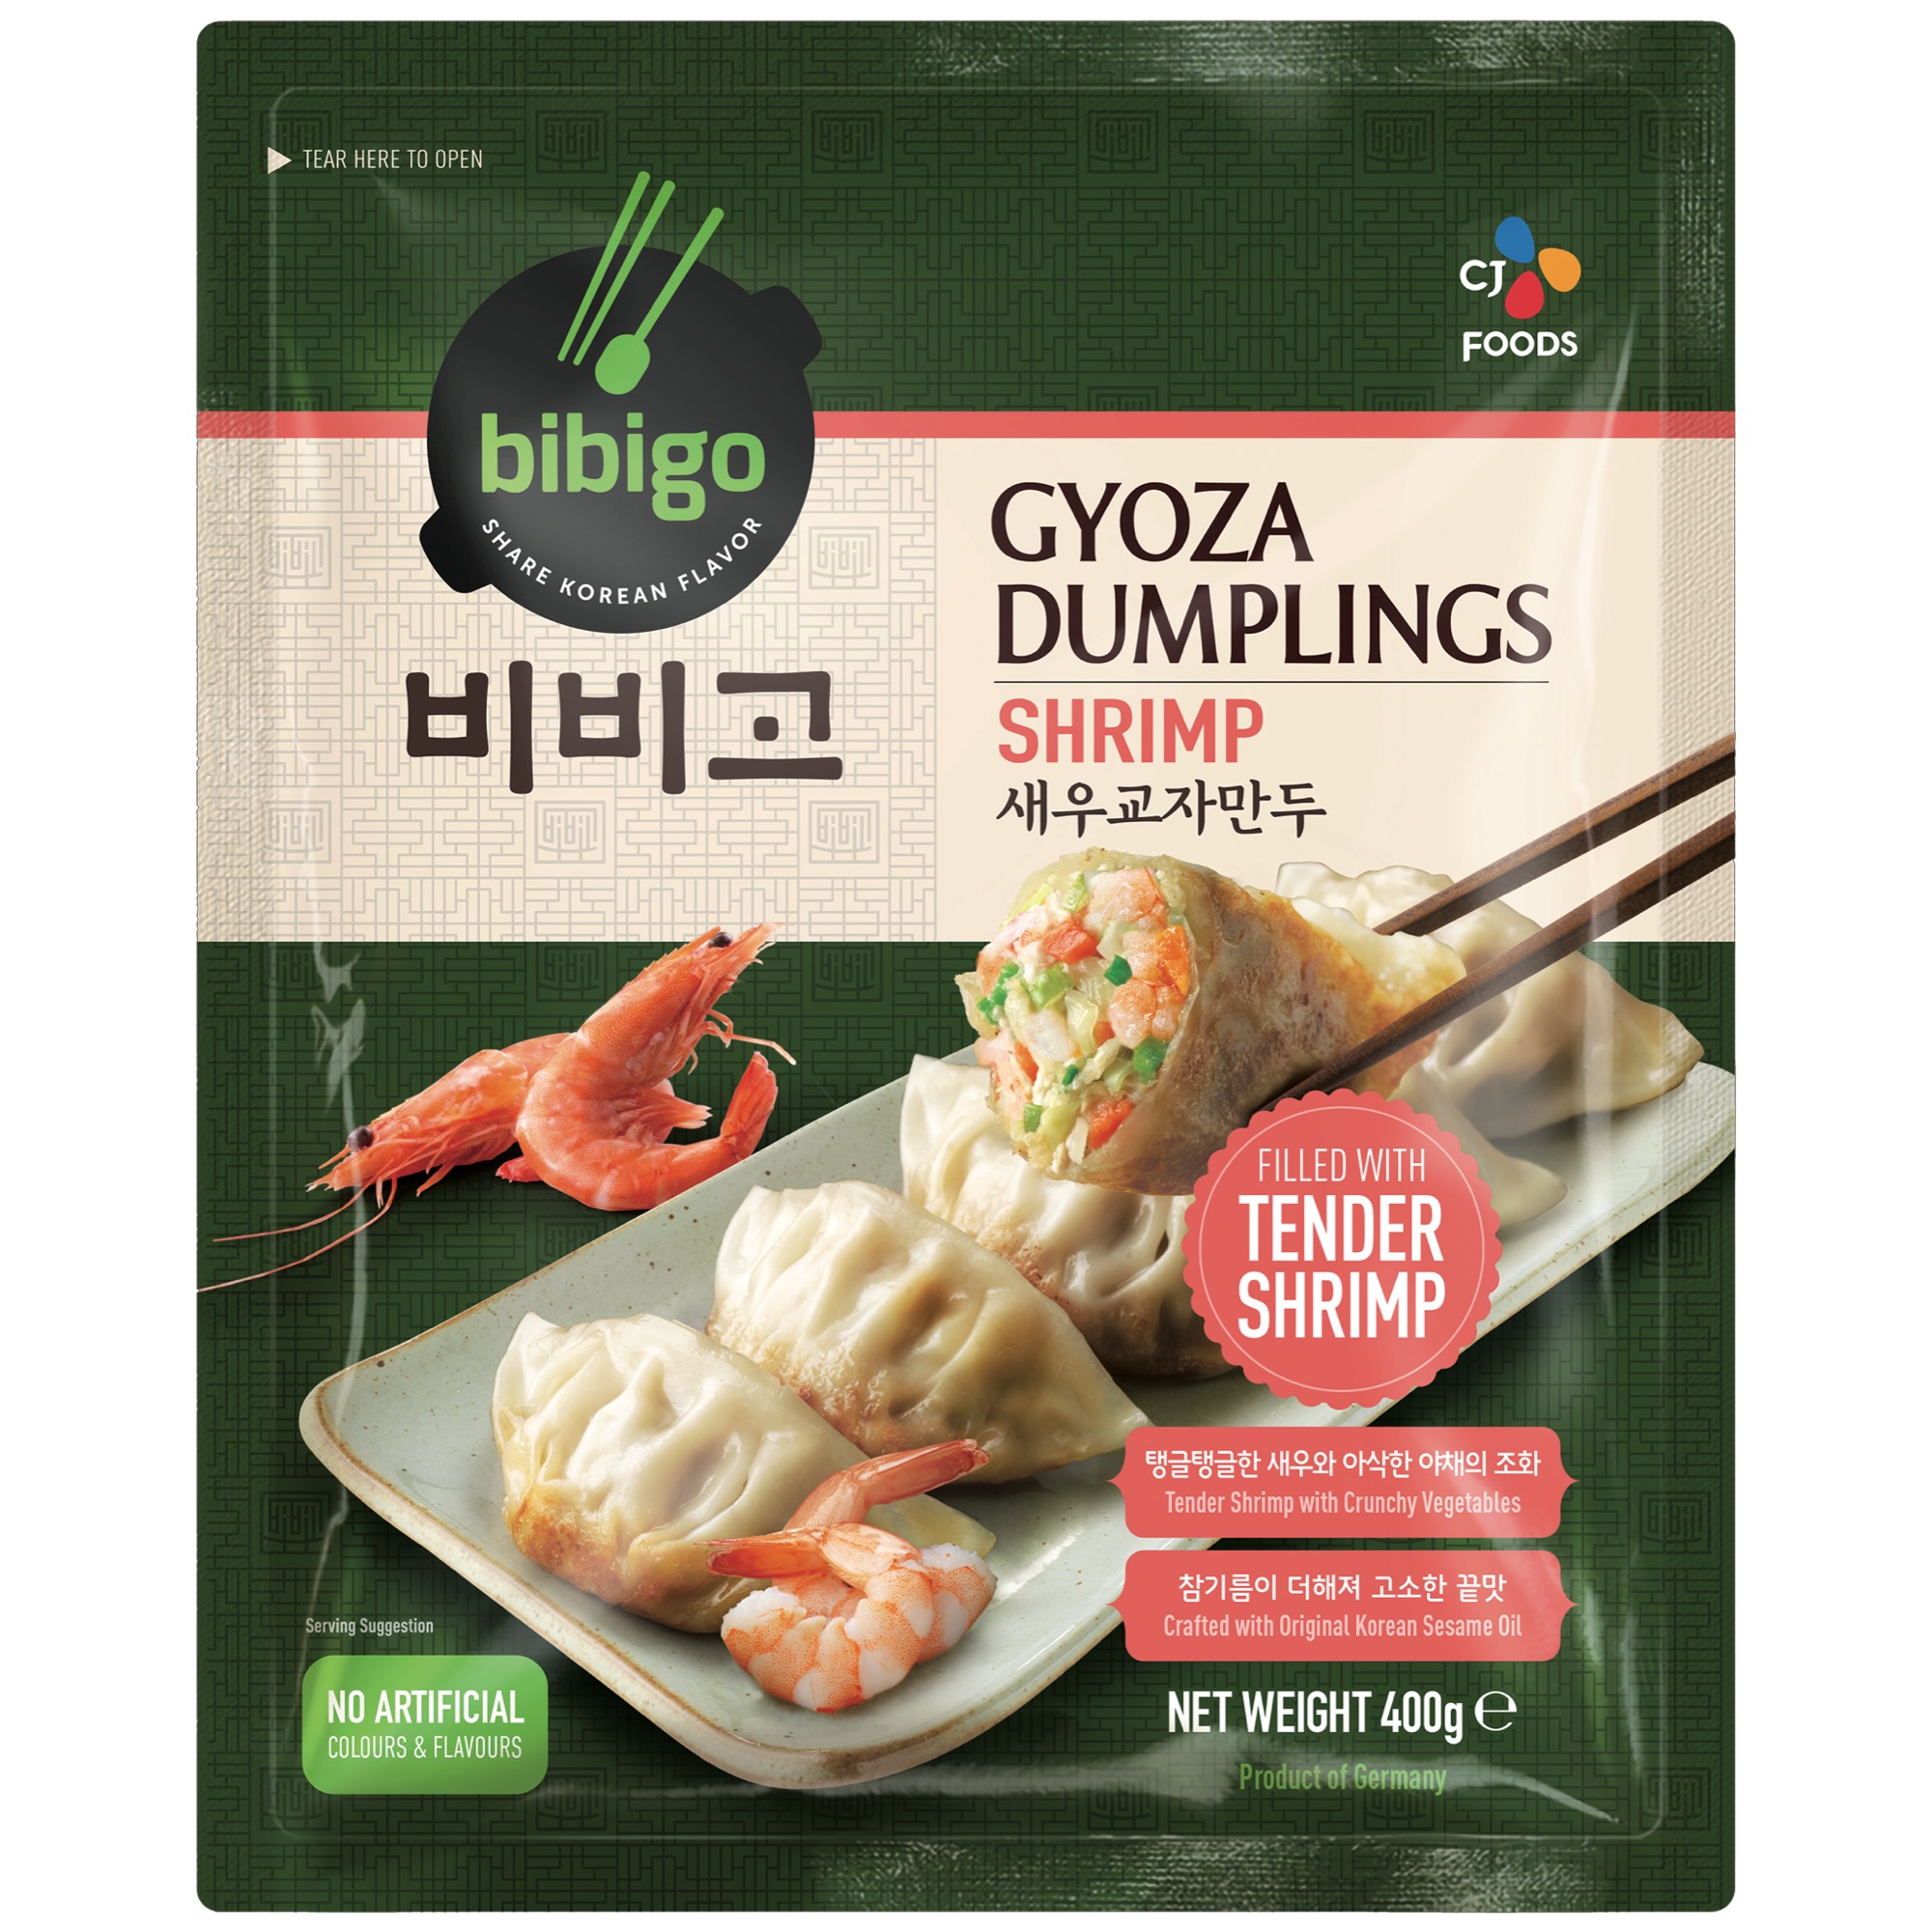 Gyoza Dumplings Shrimp mr.400g